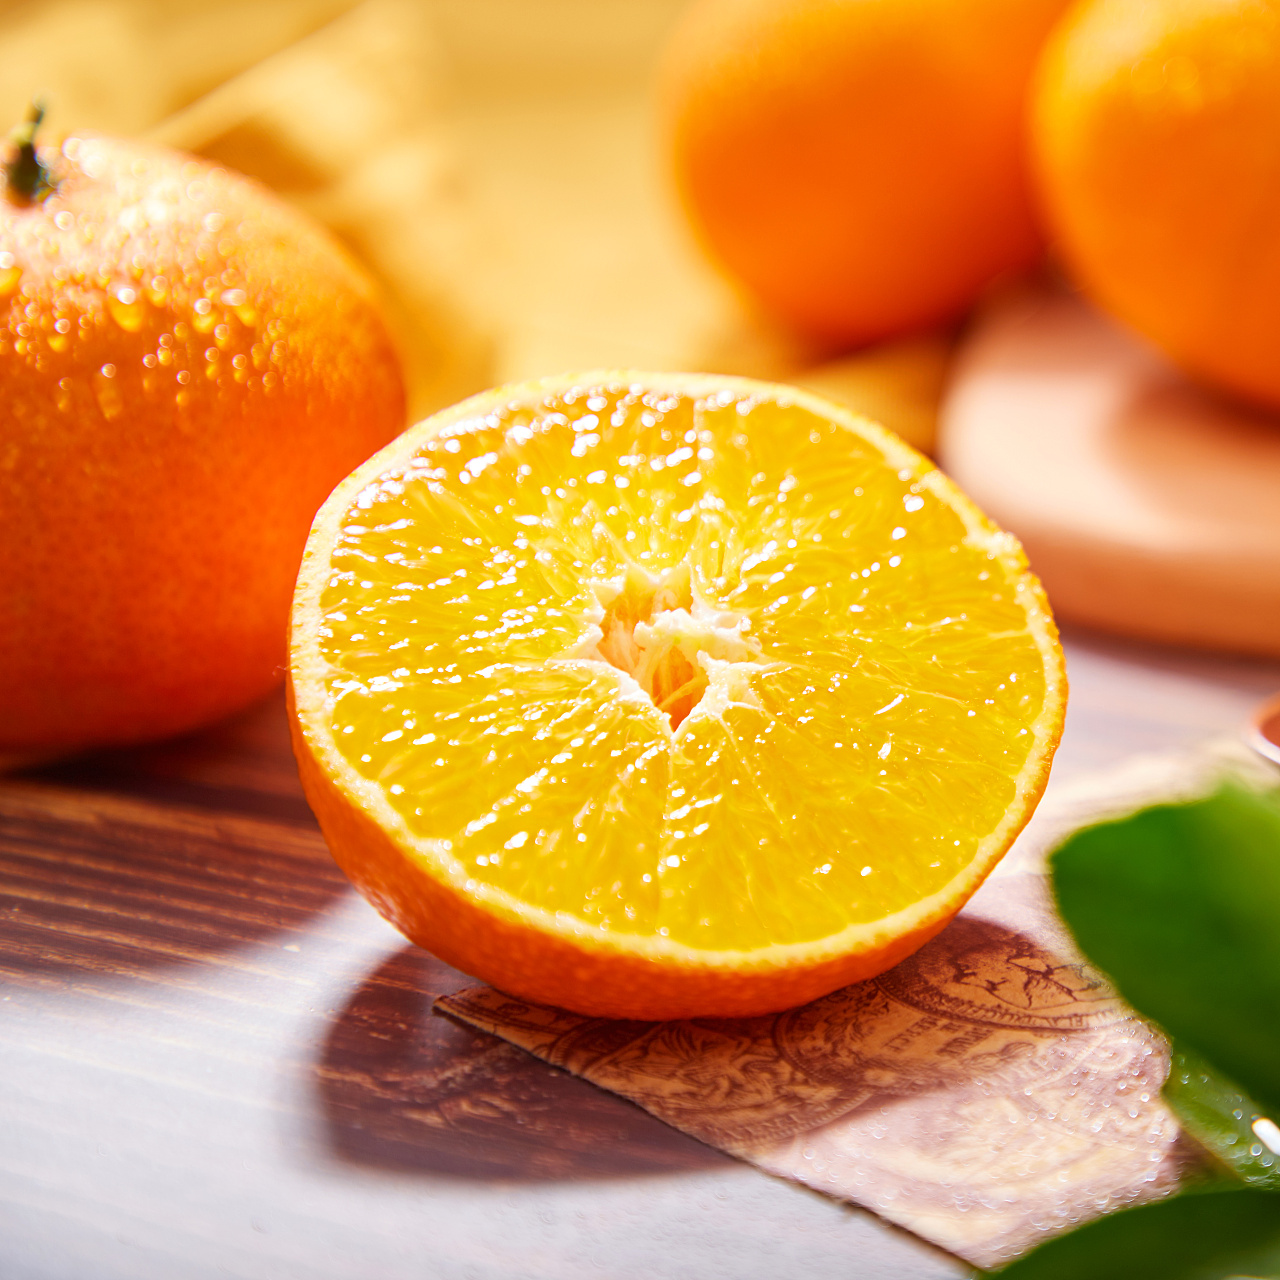 爱媛38号果冻橙新鲜橙子水果当季整箱四川柑橘蜜桔子10斤大果包邮